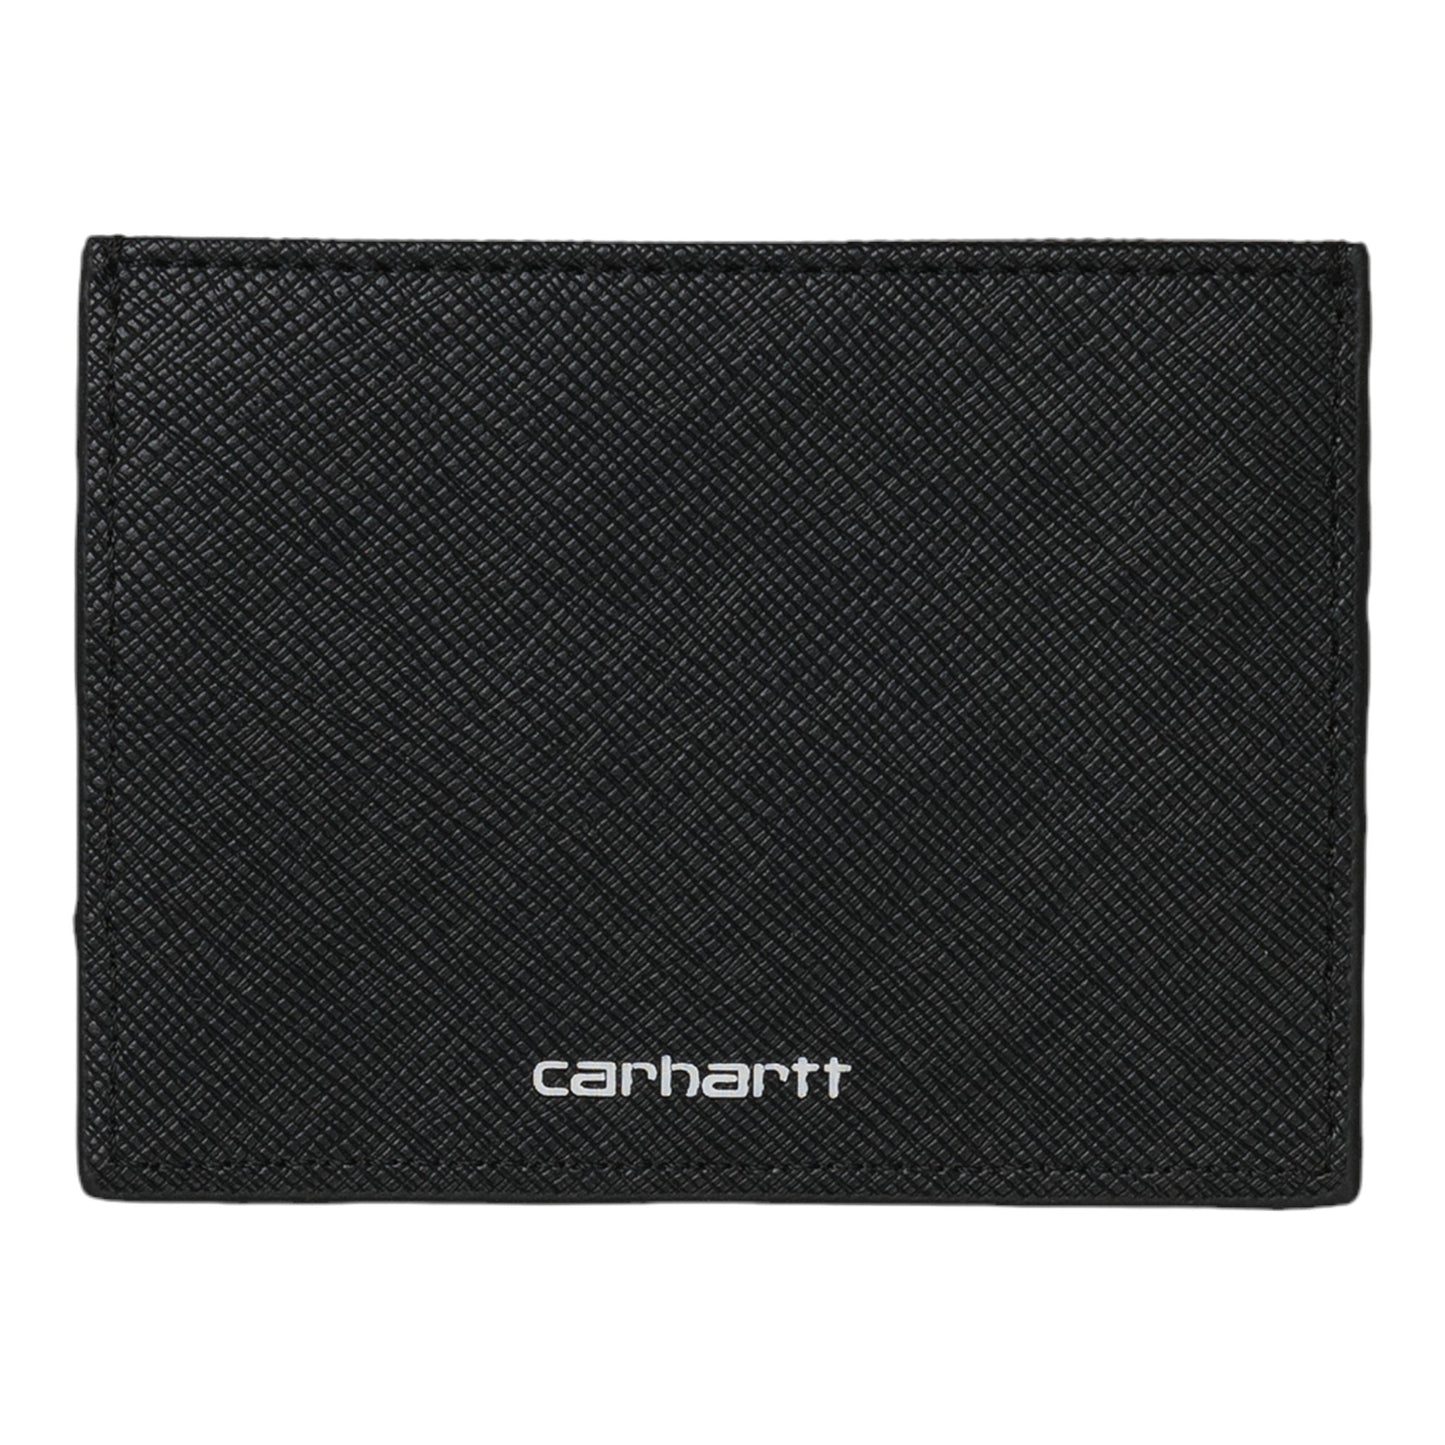 CARHARTT WIP COATED CARD HOLDER